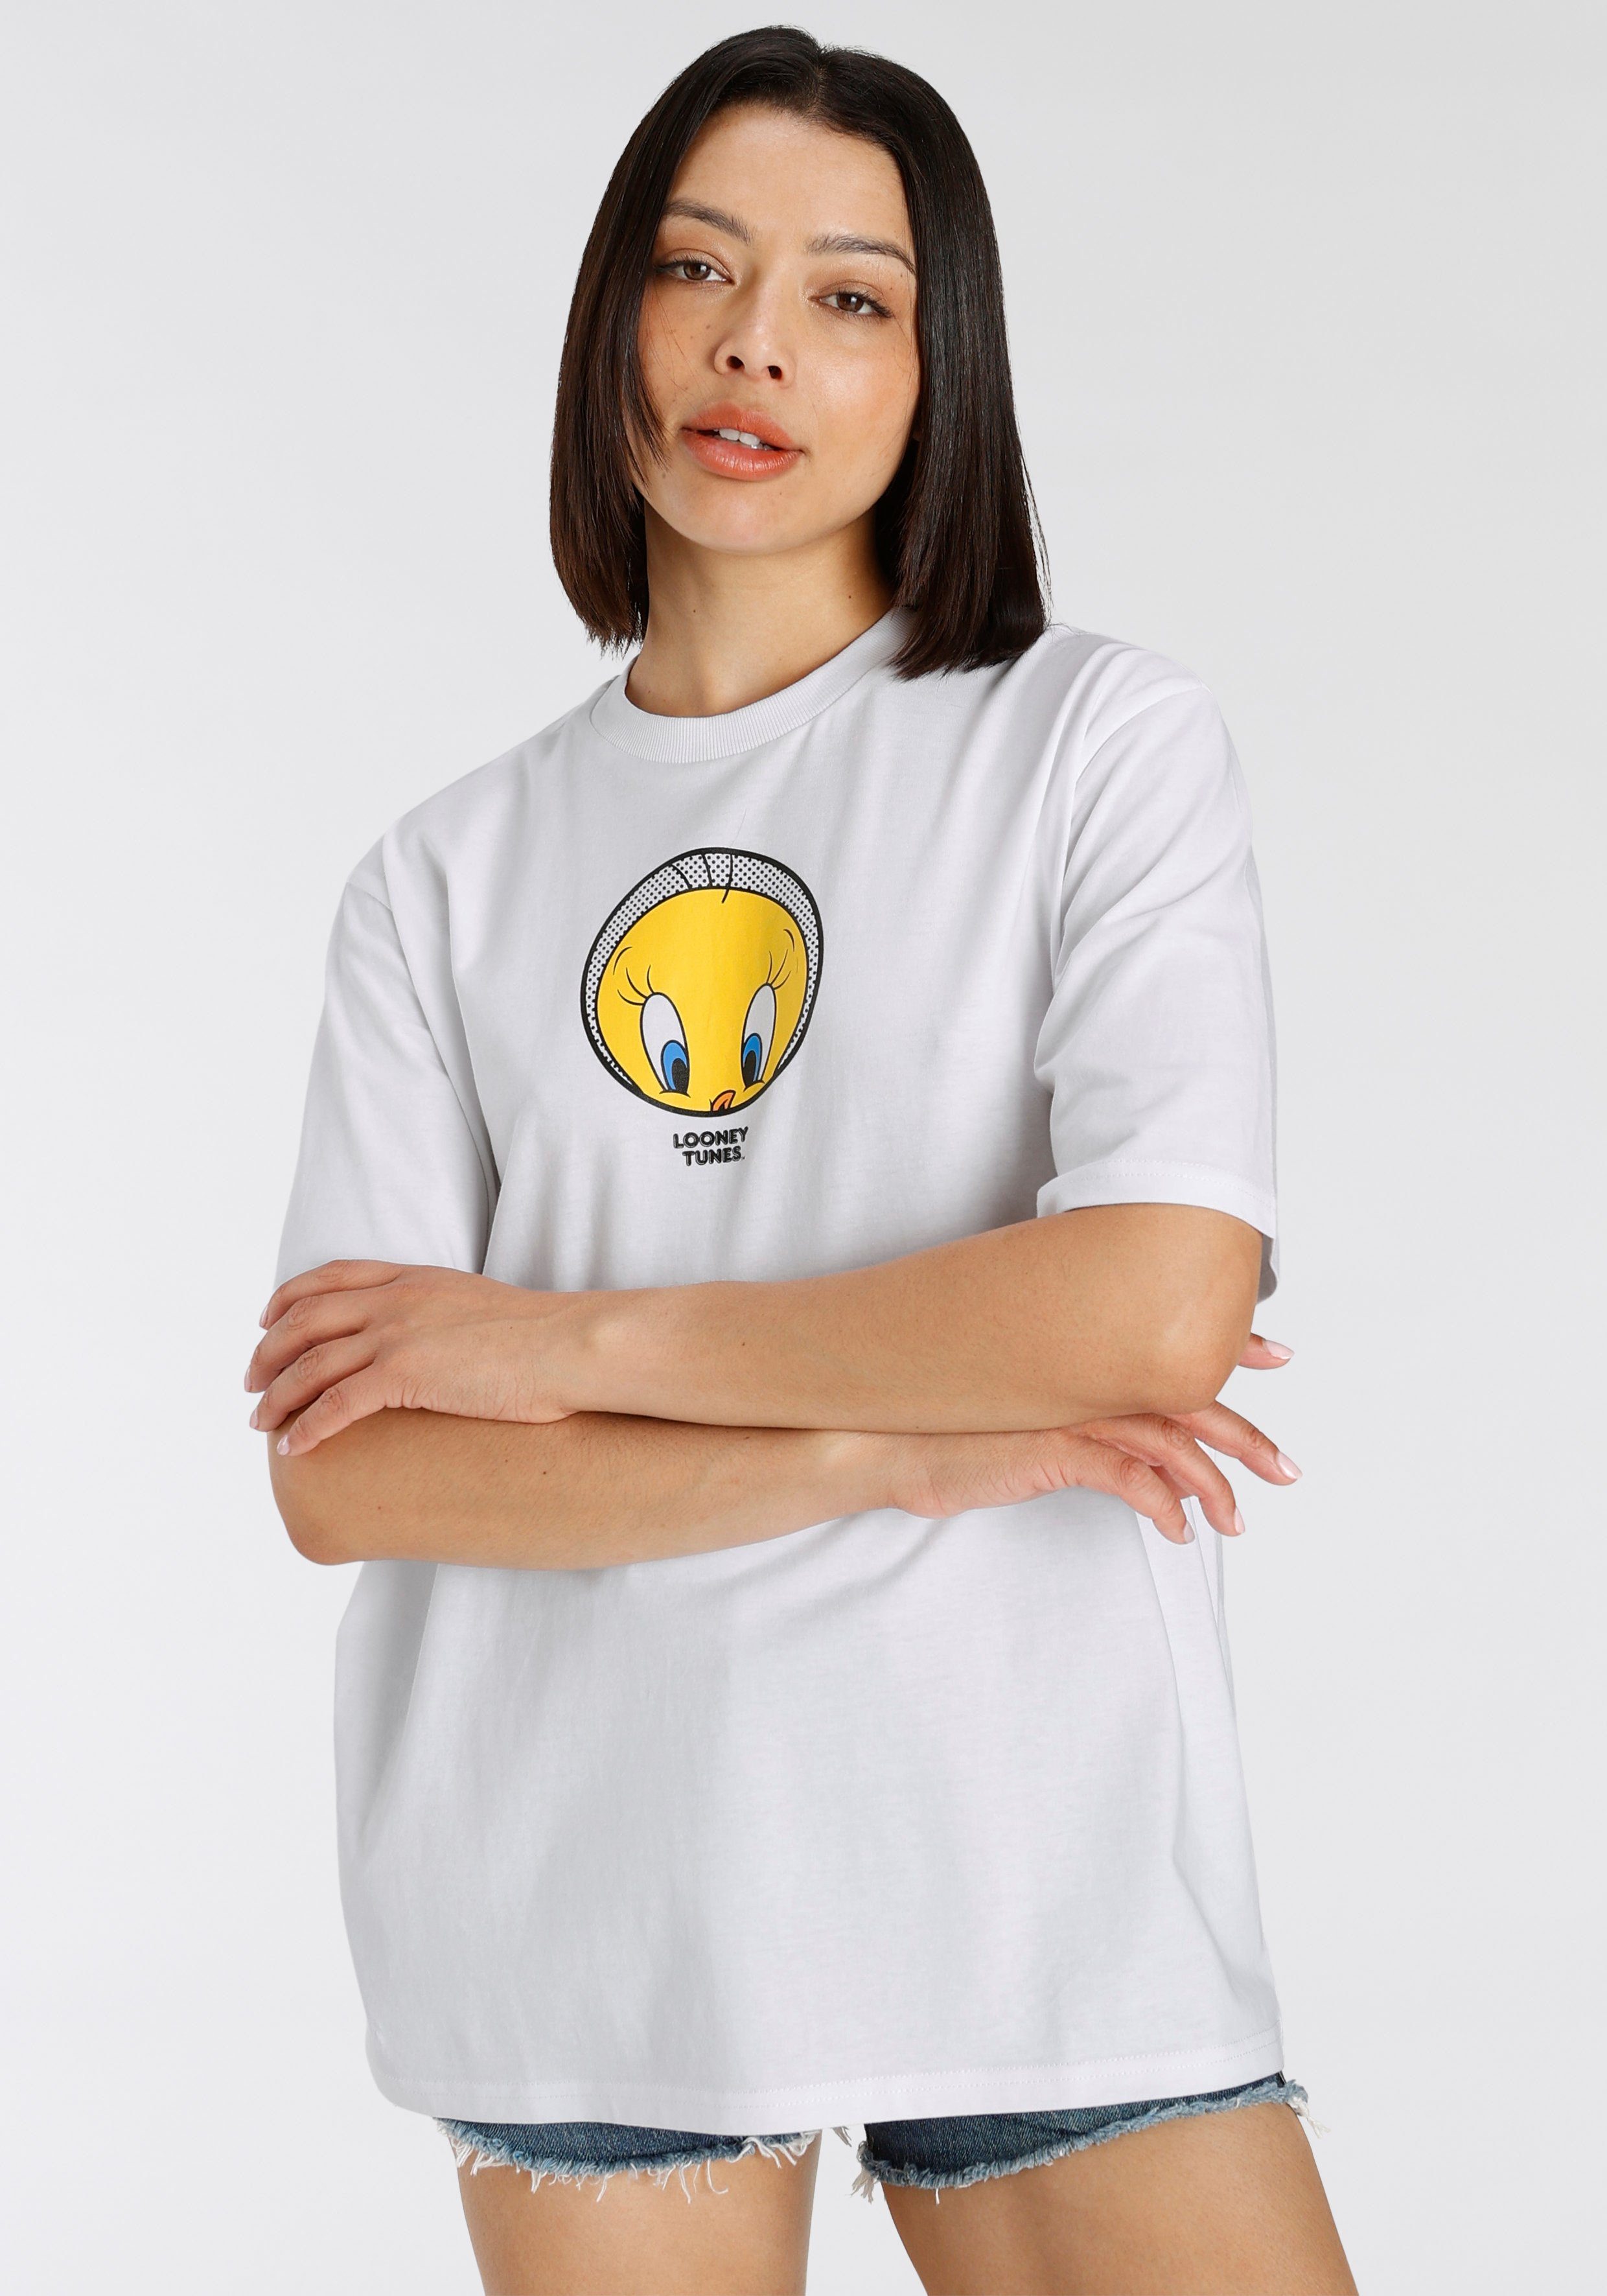 York New T-Shirt Capelli Tweety white T-Shirt